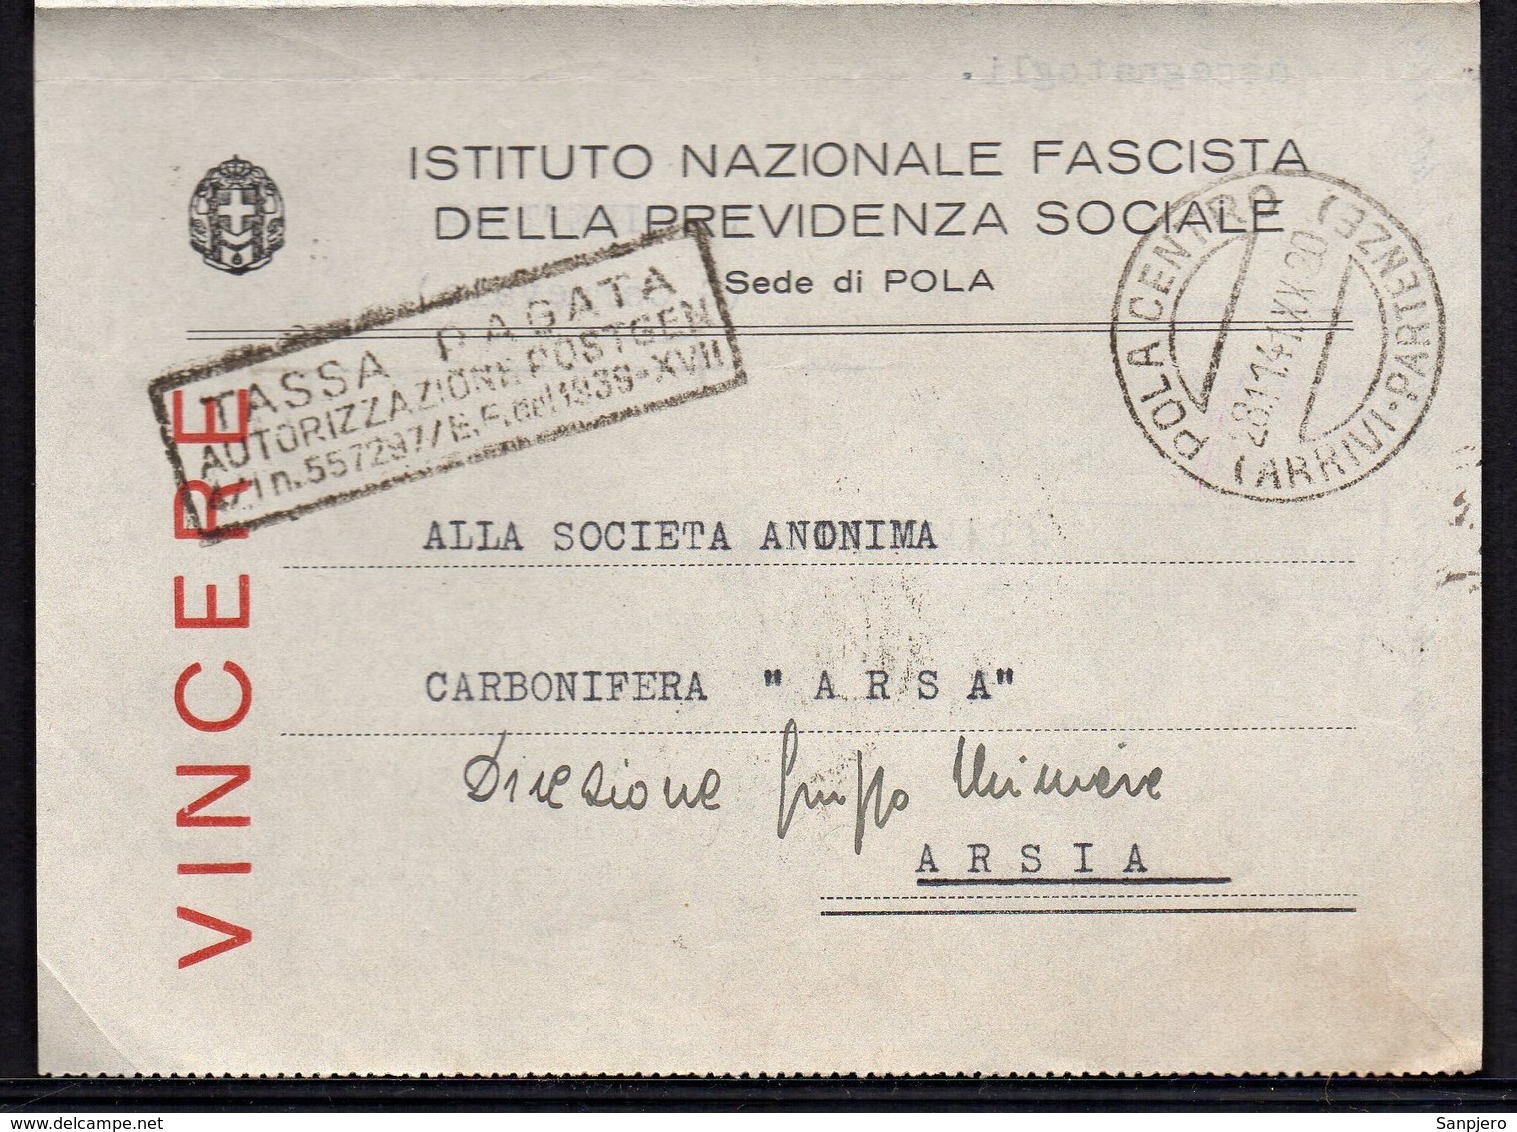 ITALY ITALIA POLA 1941. INSTITUTO NAZIONALE FASCISTA DELLE PREVIDENZA SOCIALE - Documenti Storici